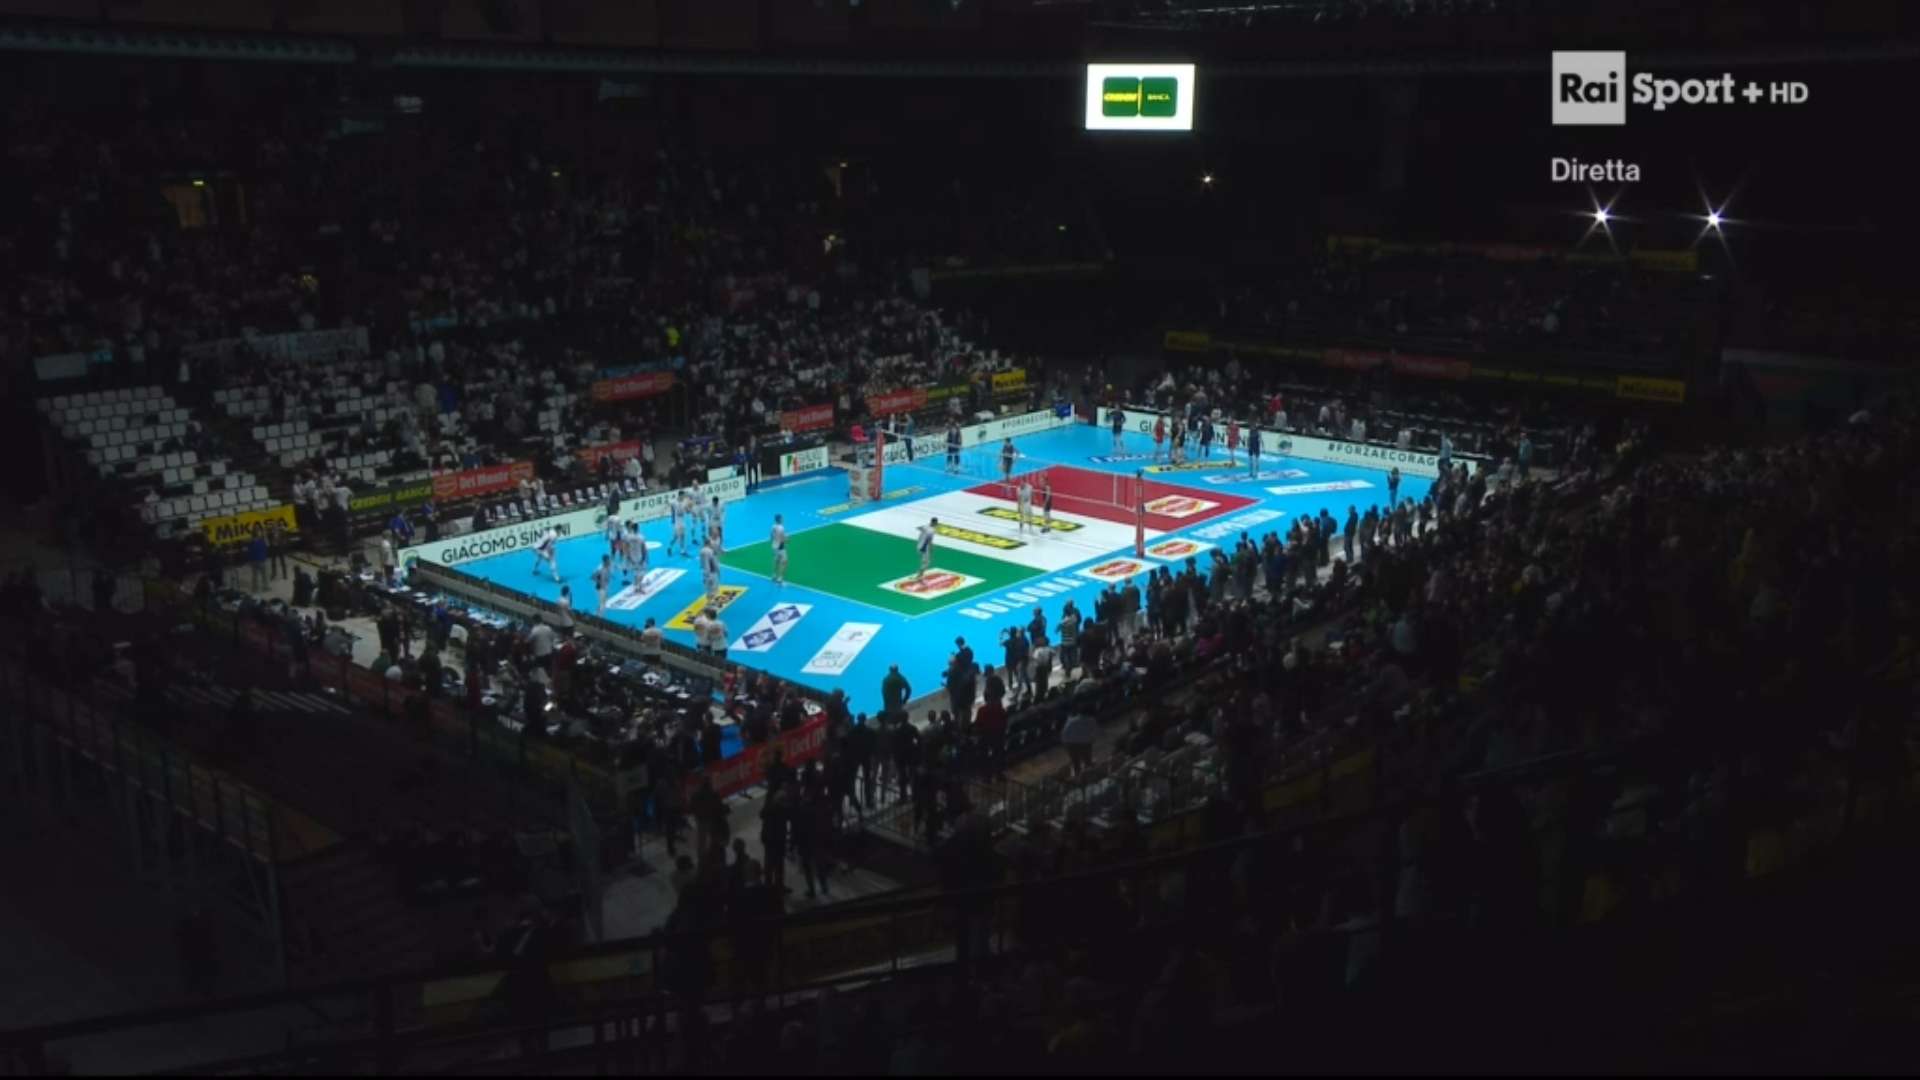 Domenica Rai Sport, 6 Marzo 2022 | diretta Paralimpiadi Pechino, Volley Coppa Italia, Basket